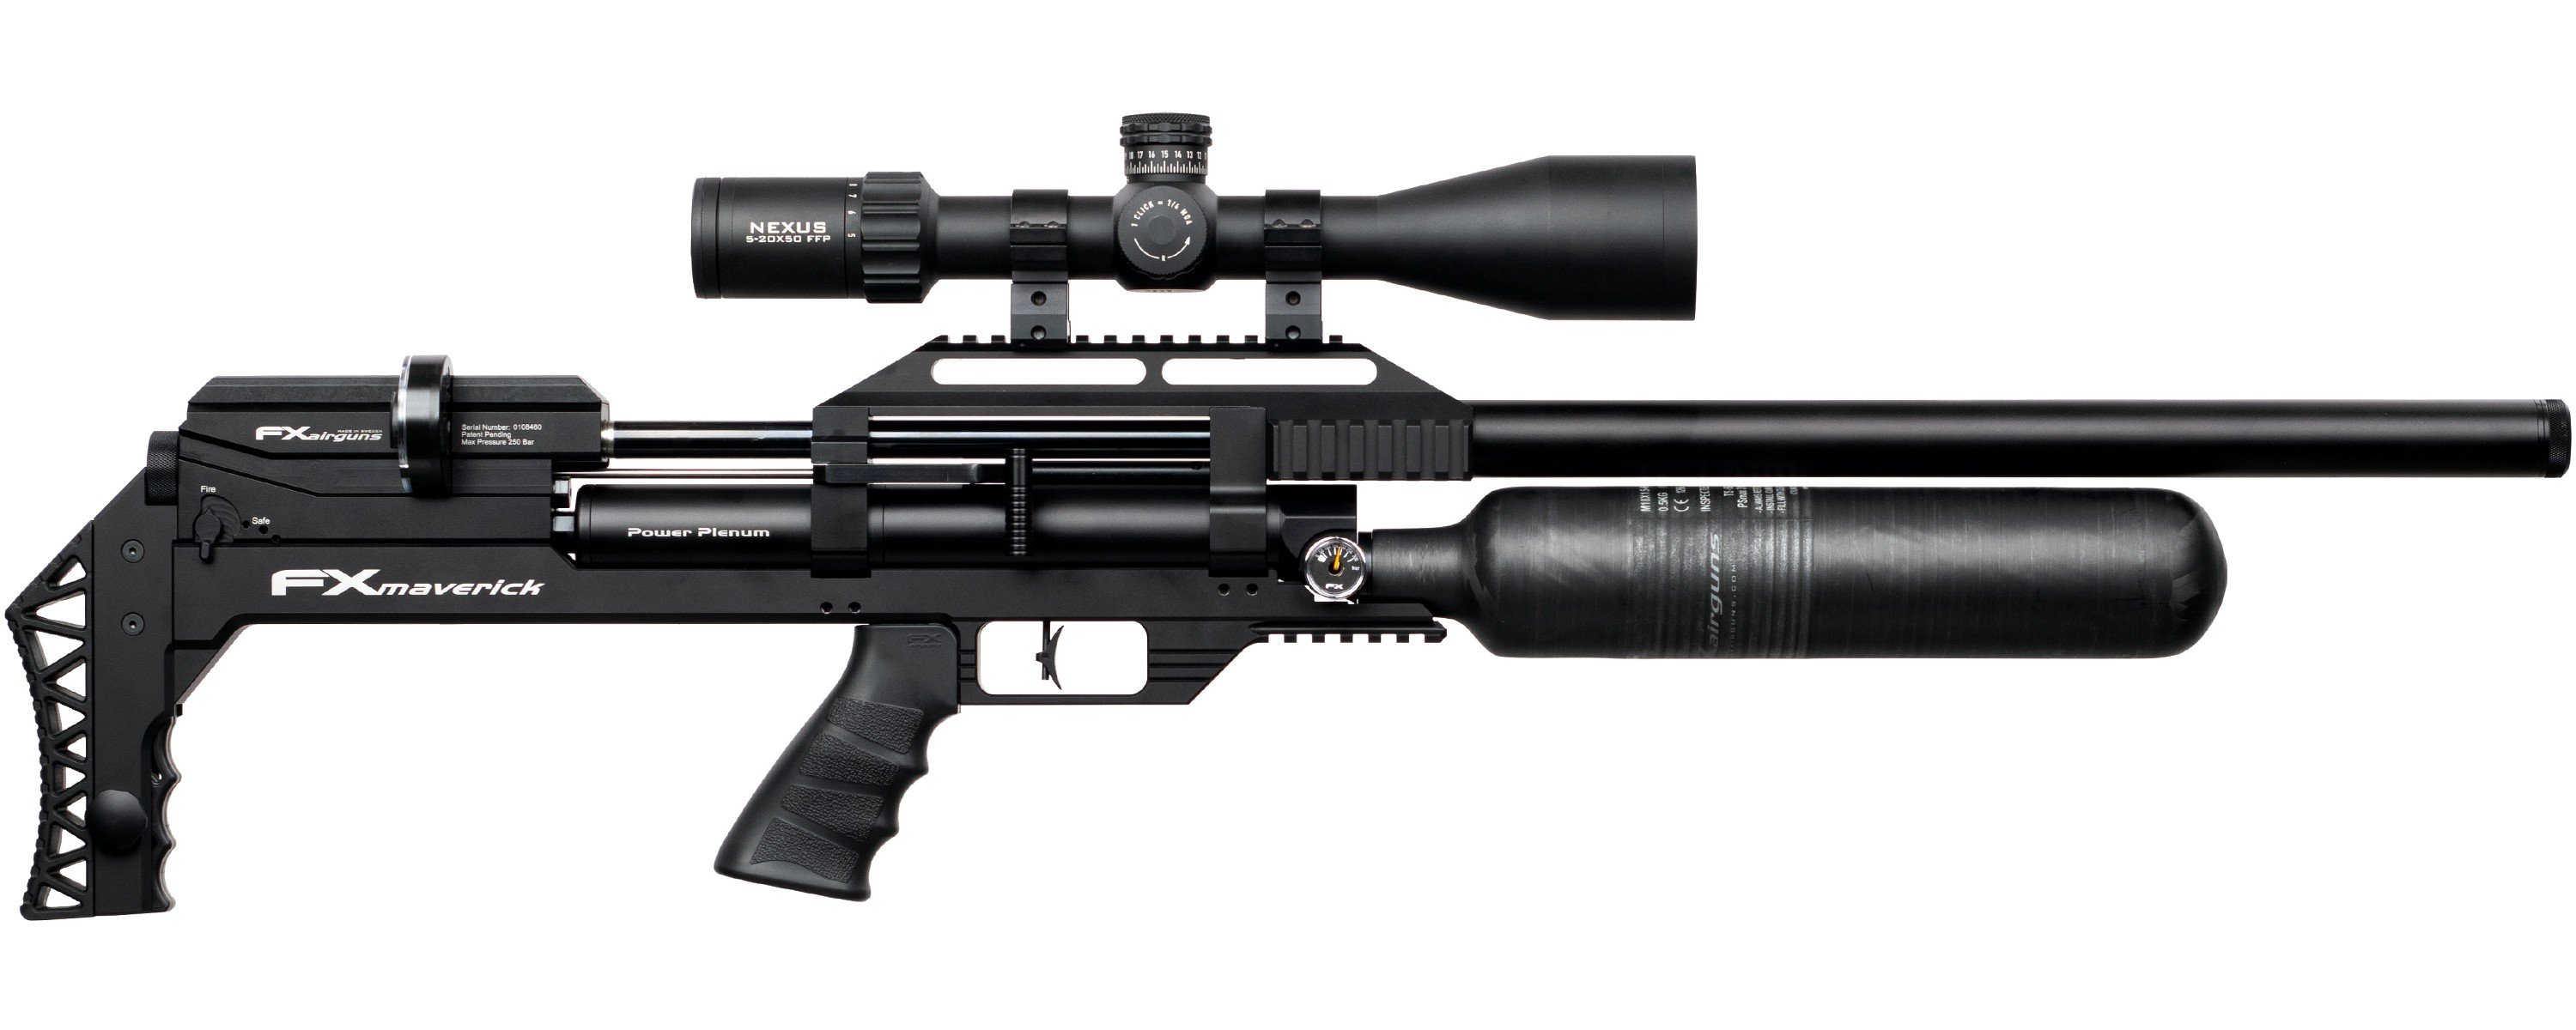 Comprar En Linea Carabina Pcp Fx Maverick Sniper De Marca Fx Airguns